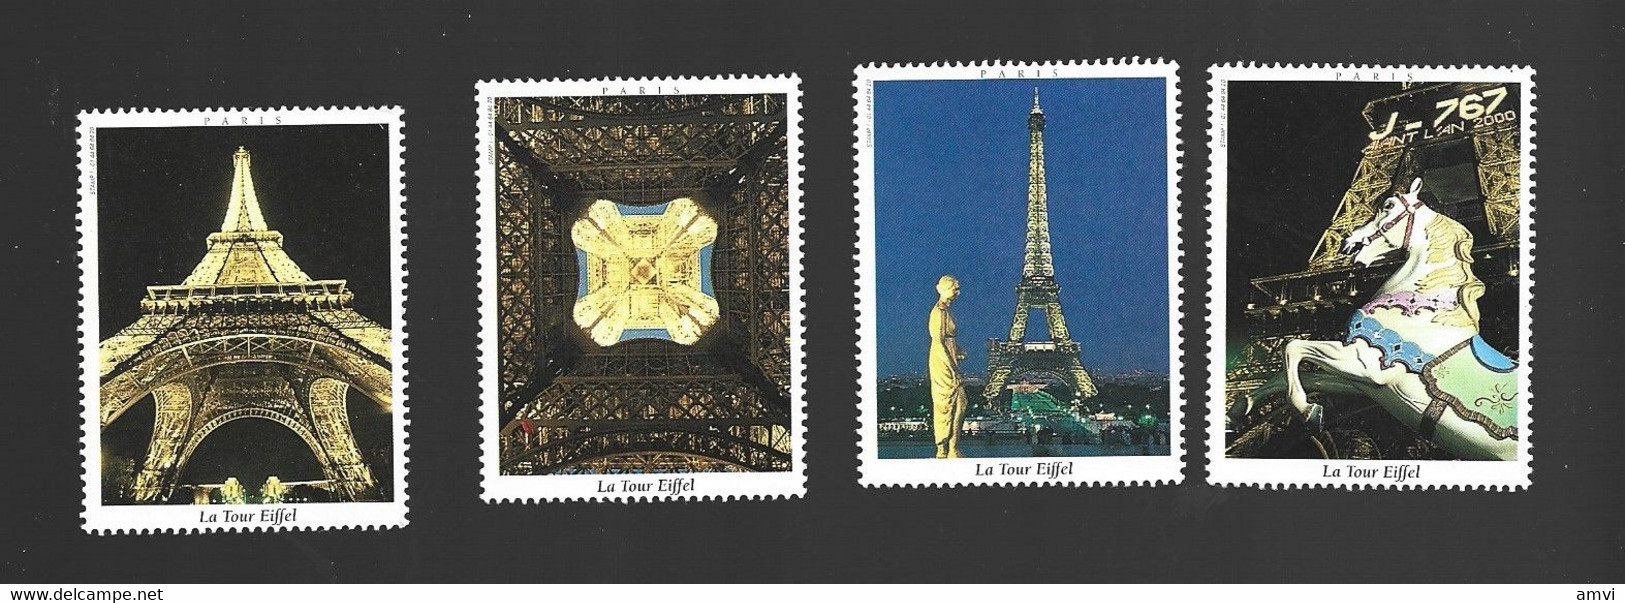 22- 5 - 1240 4 Vignette La Tour Eiffel - Tourisme (Vignettes)